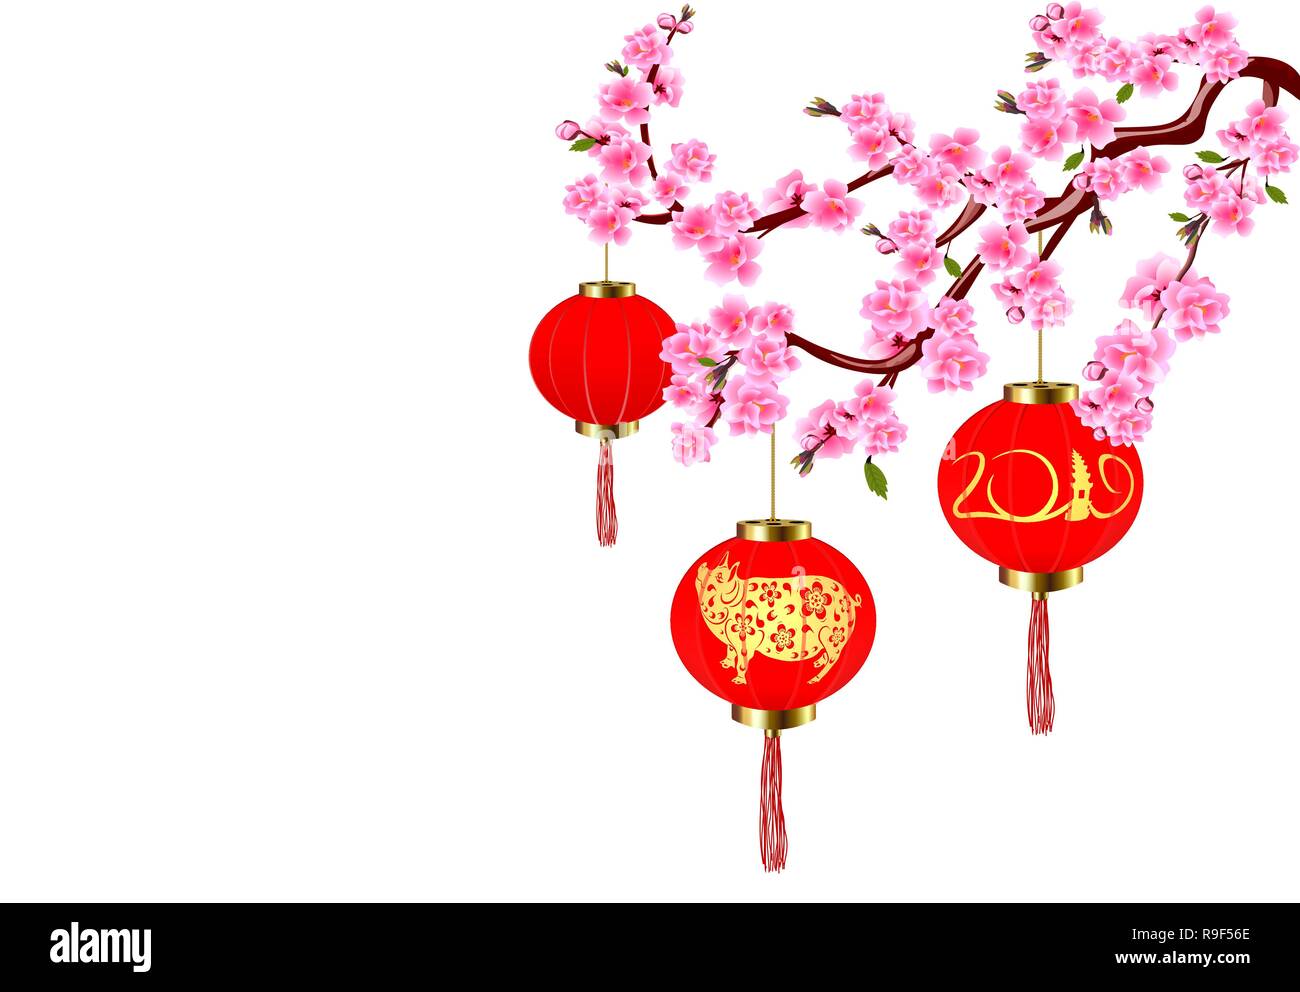 Das chinesische Neujahr. Sakura und roten Laternen mit Bildern von einem Schwein. Cherry Blumen mit Knospen und Blätter am Zweig. Abbildung Stock Vektor